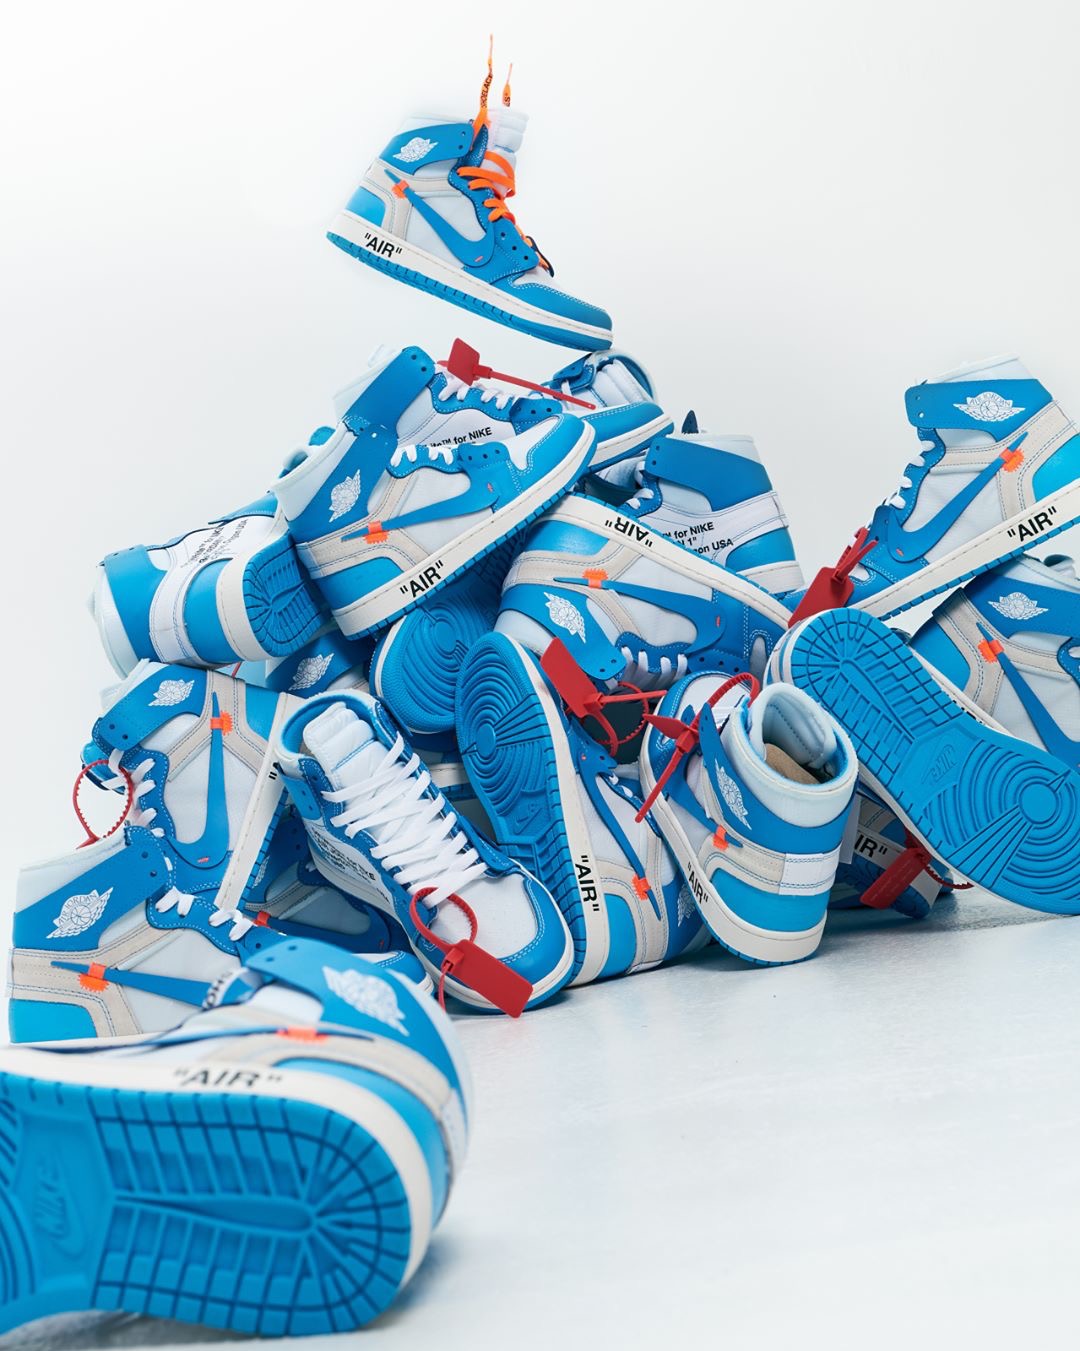 プレゼント企画開催中 Nike Air Jordan 1 Powder Blue Up To Date